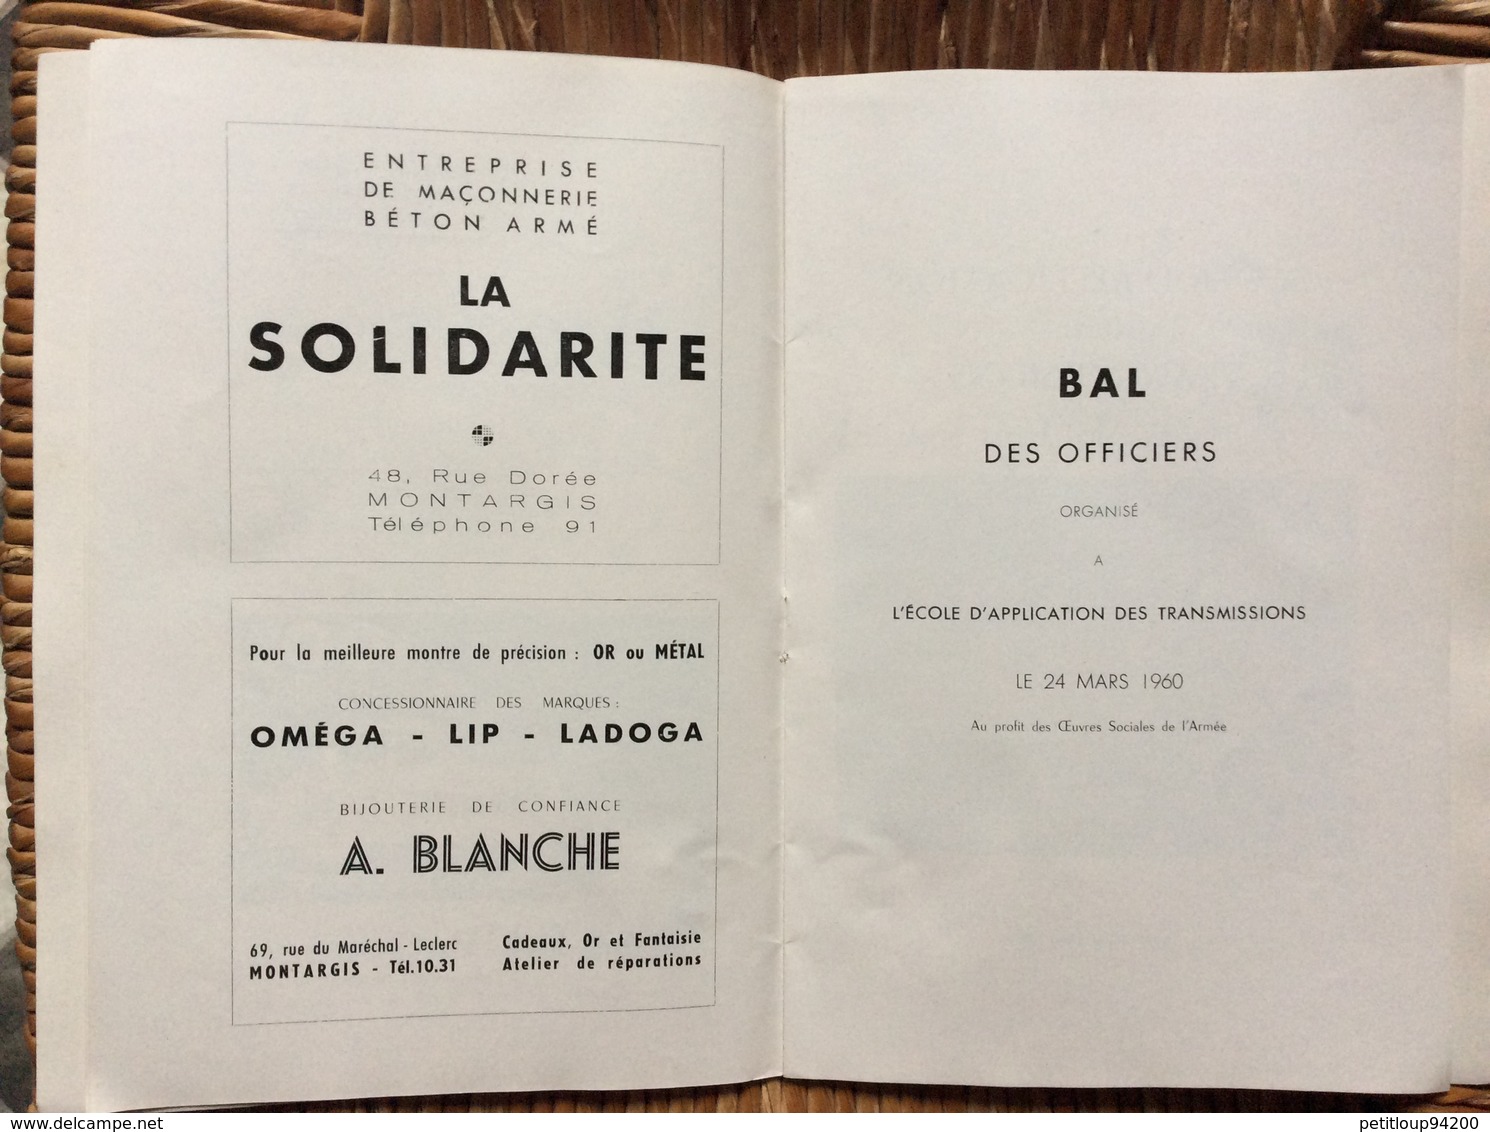 PROGRAMME  ÉCOLE D’APPLICATION DES TRANSMISSIONS  EAT  Bal des Officiers  SAINT-GABRIEL 1960  Montargis